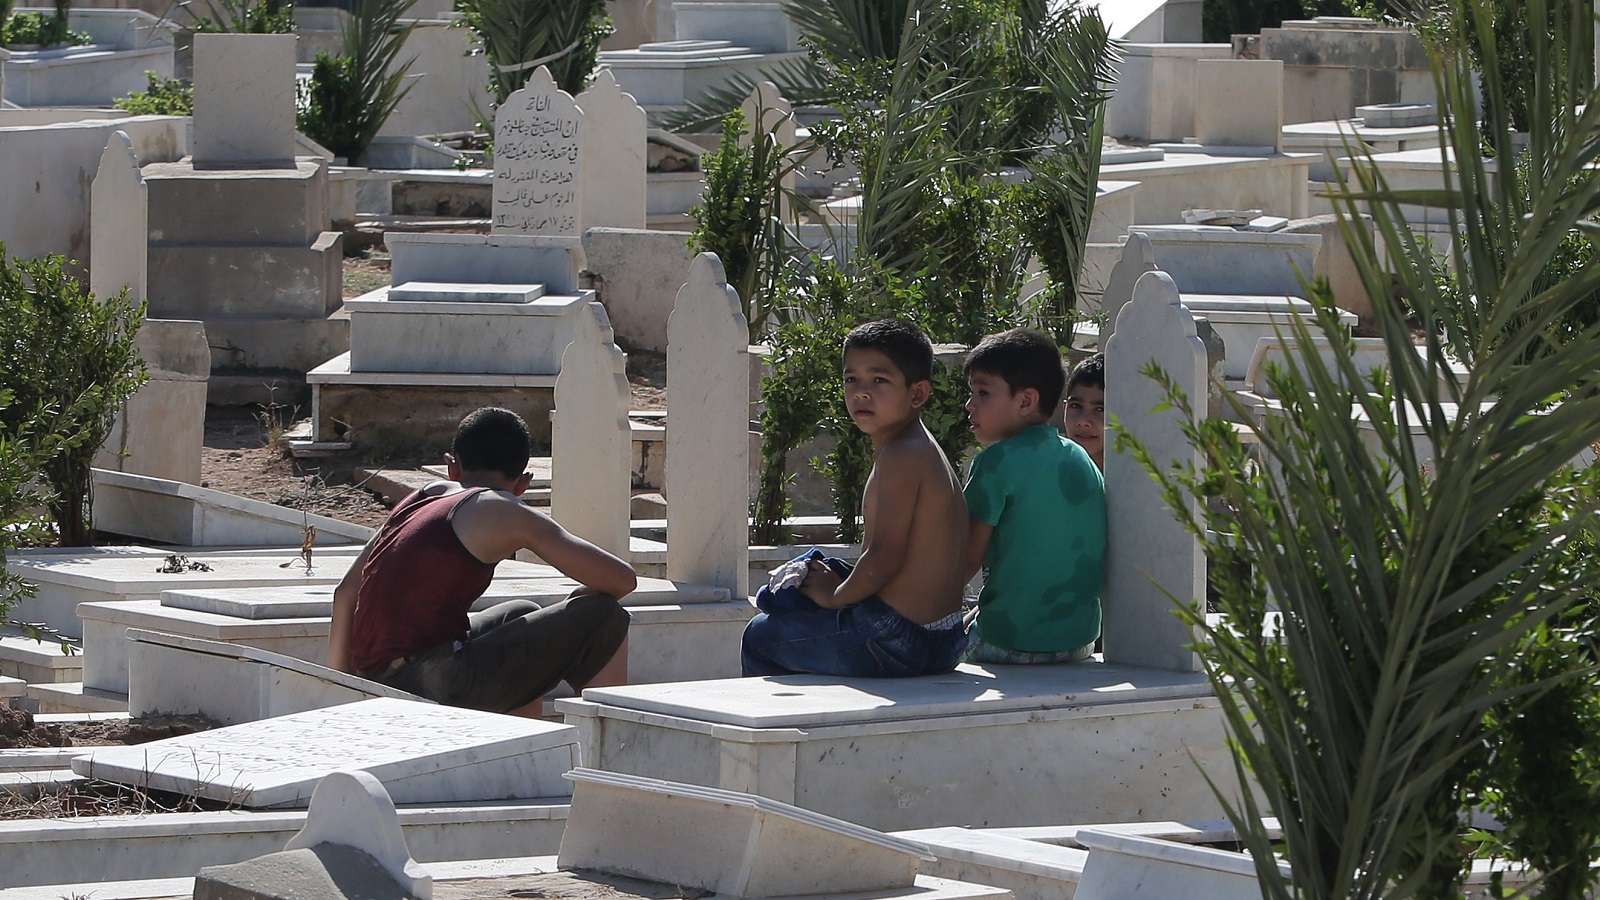 مأساة عائلتين: دفن ونبش مقبرة وإعادة دفن بخطأ مستشفى